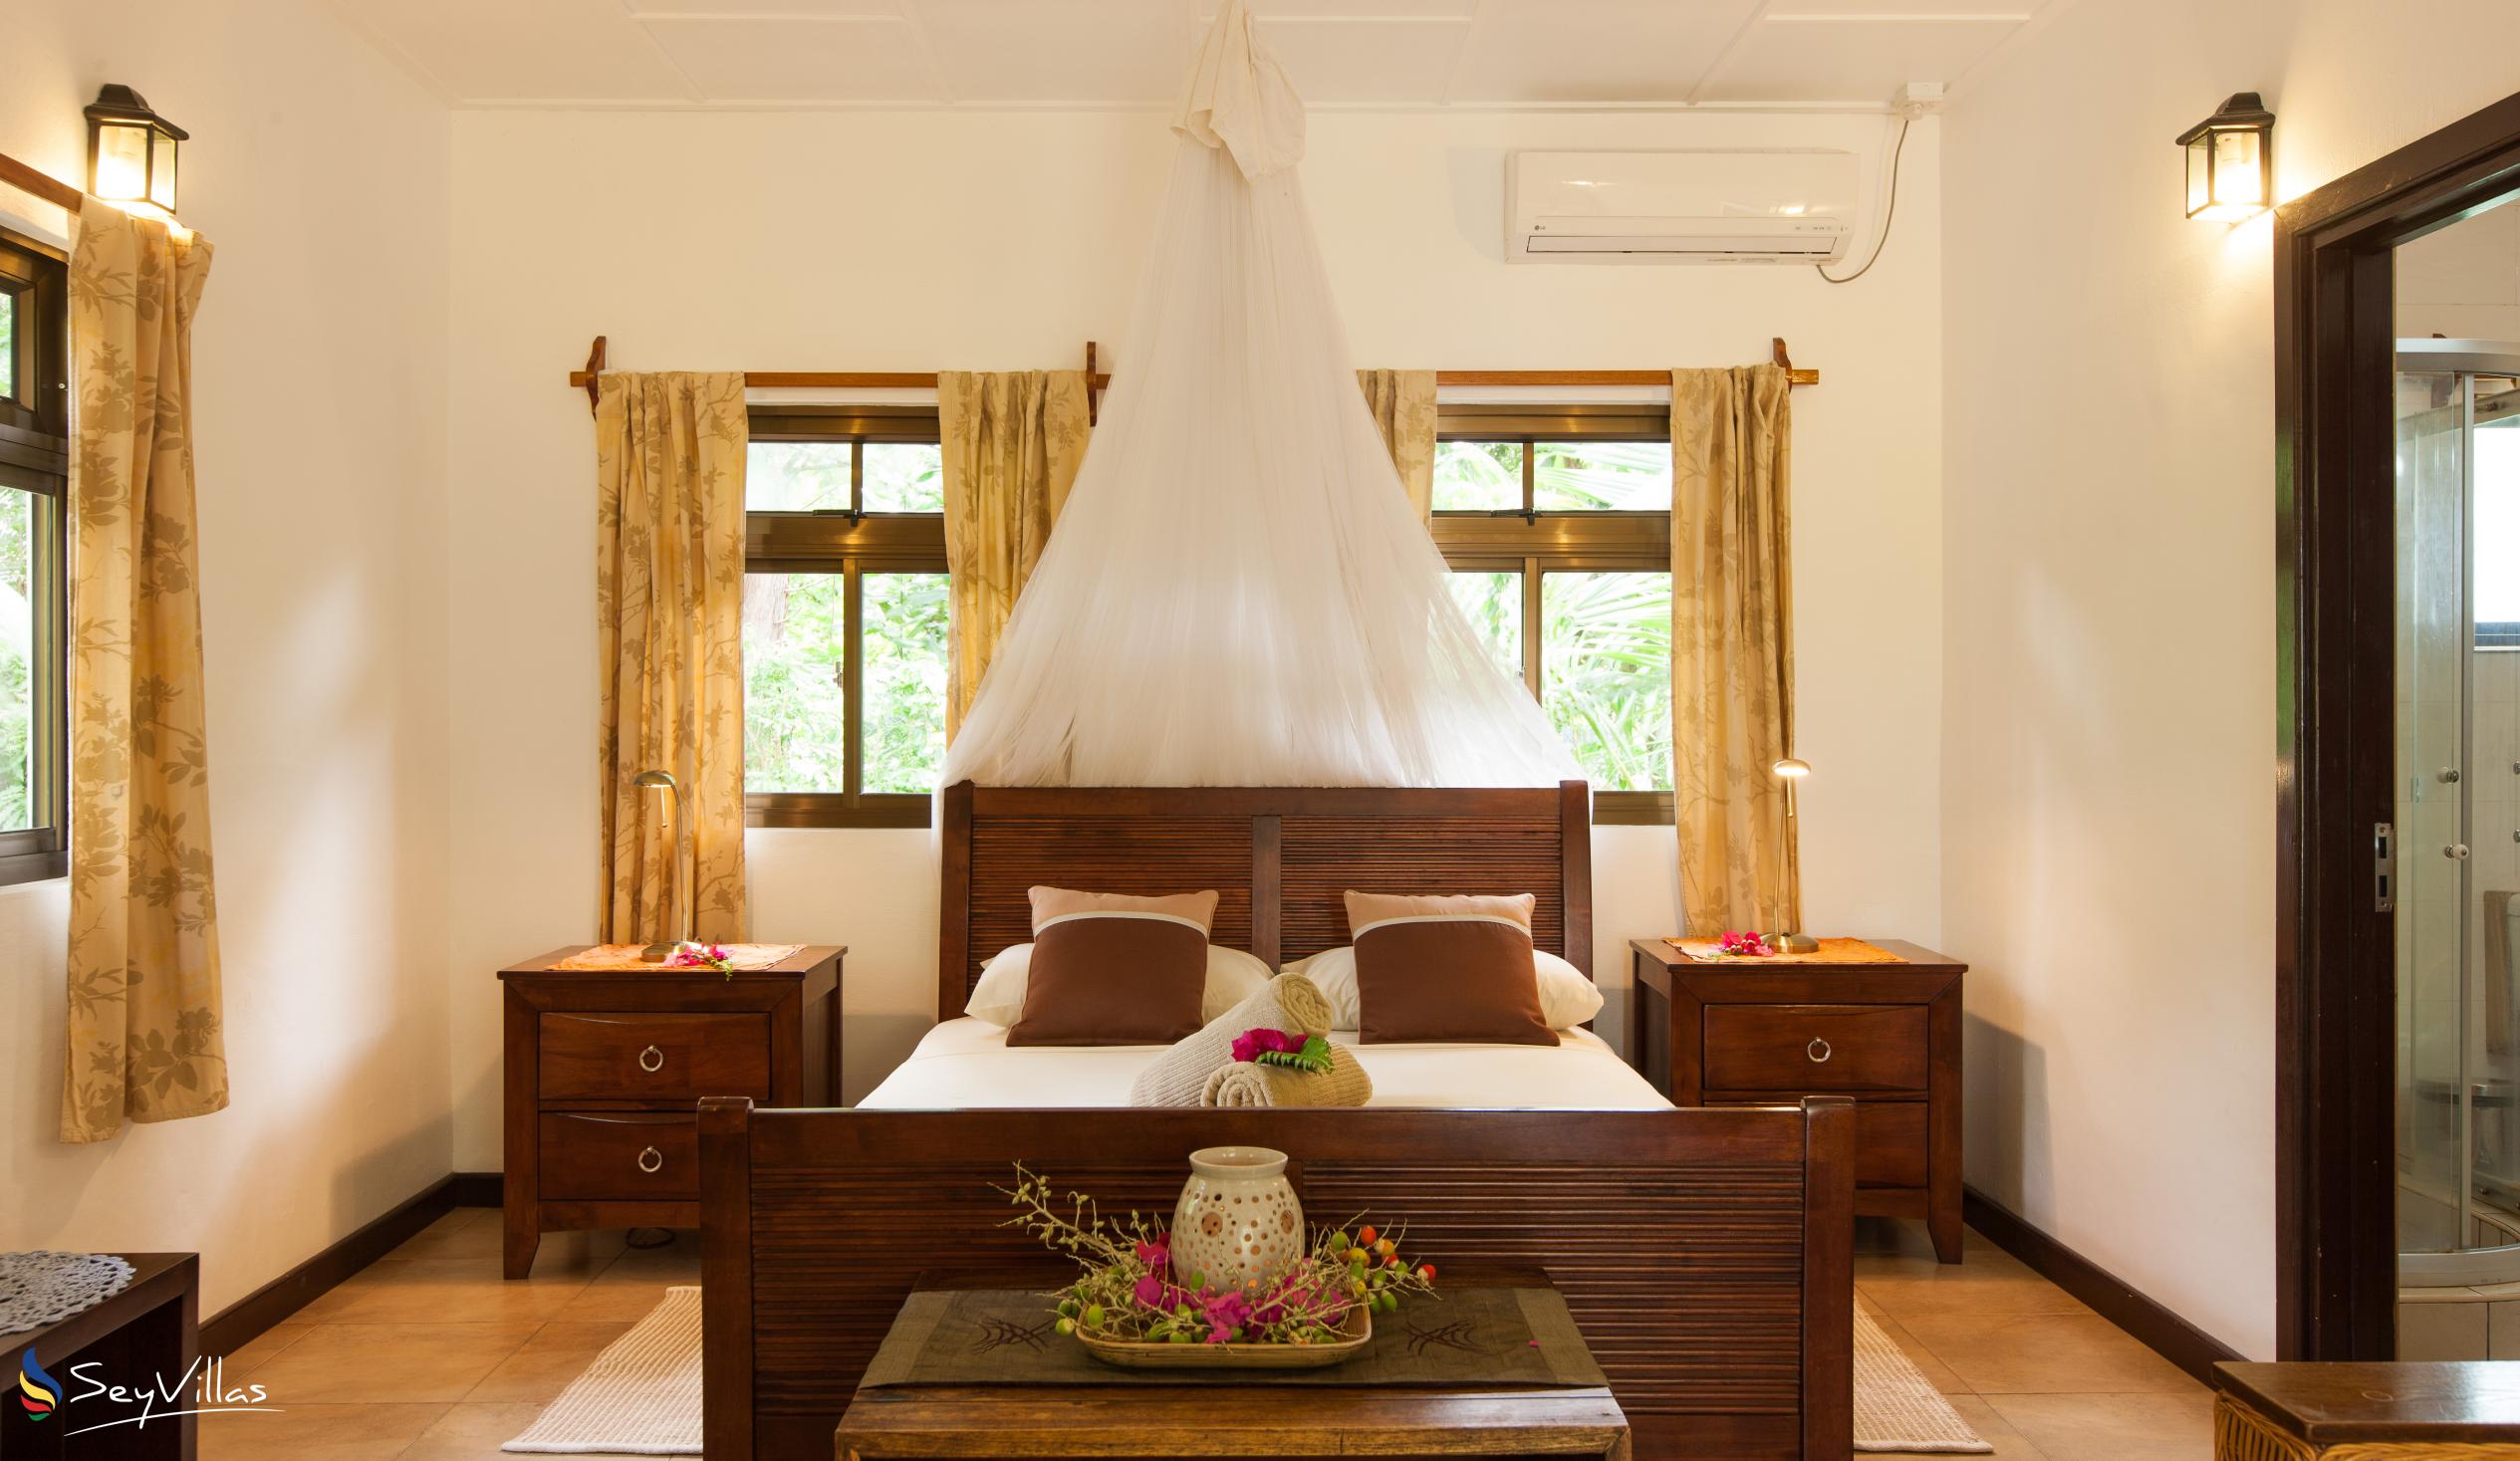 Photo 112: Domaine Les Rochers - 2-Bedroom Bungalow Palmier - La Digue (Seychelles)